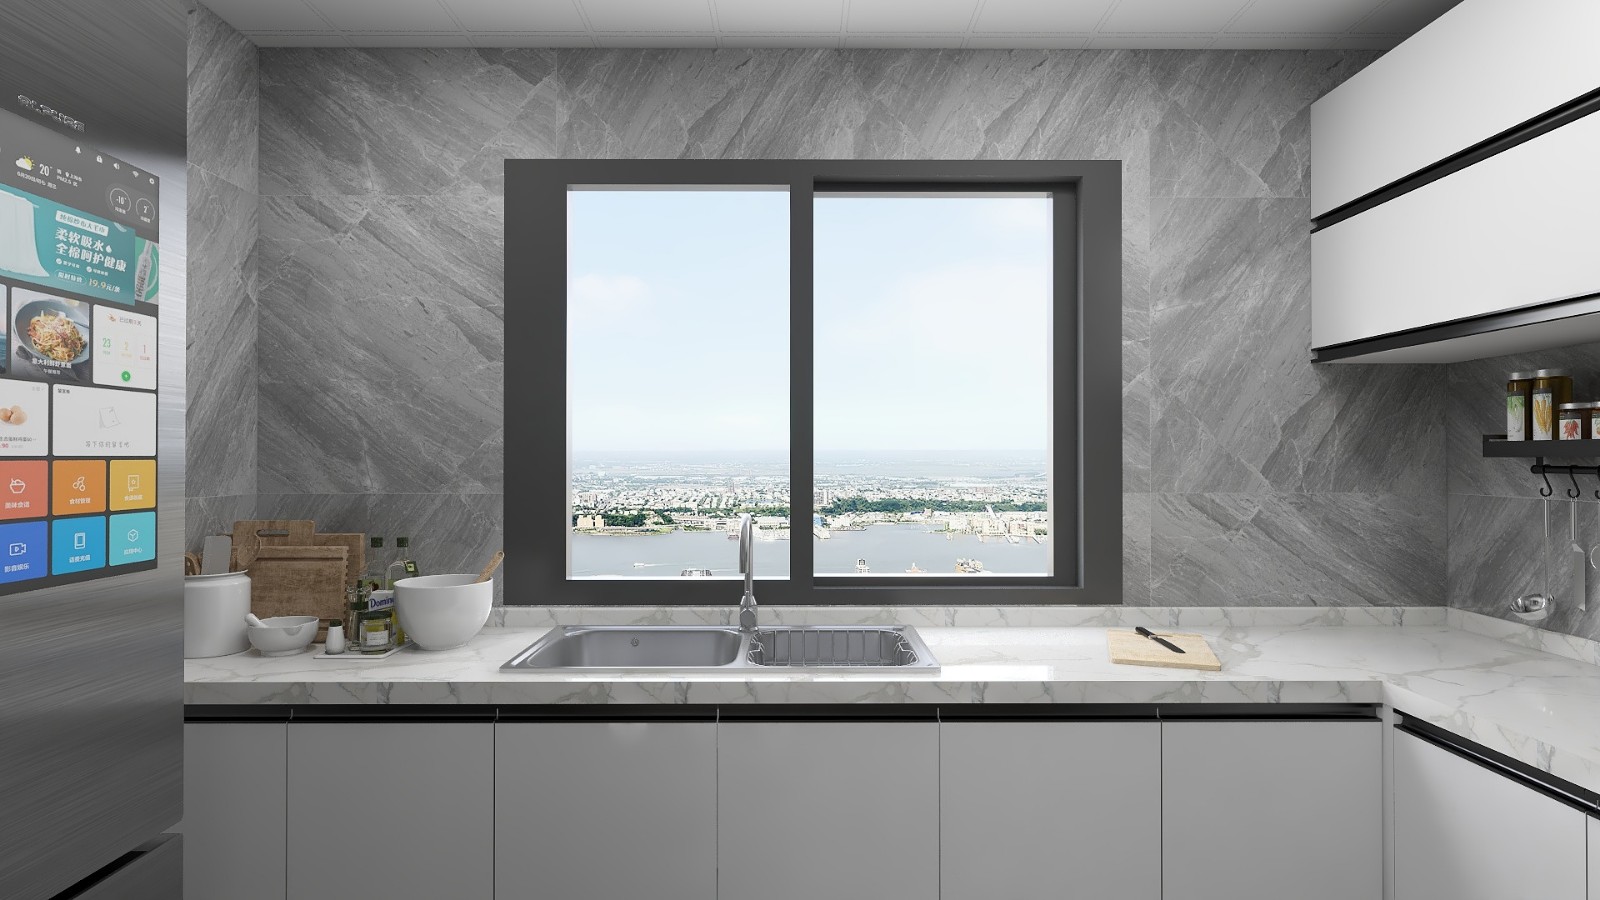 厨房墙面铺贴灰色系的墙砖,然后橱柜为白色,再加上黑框玻璃窗